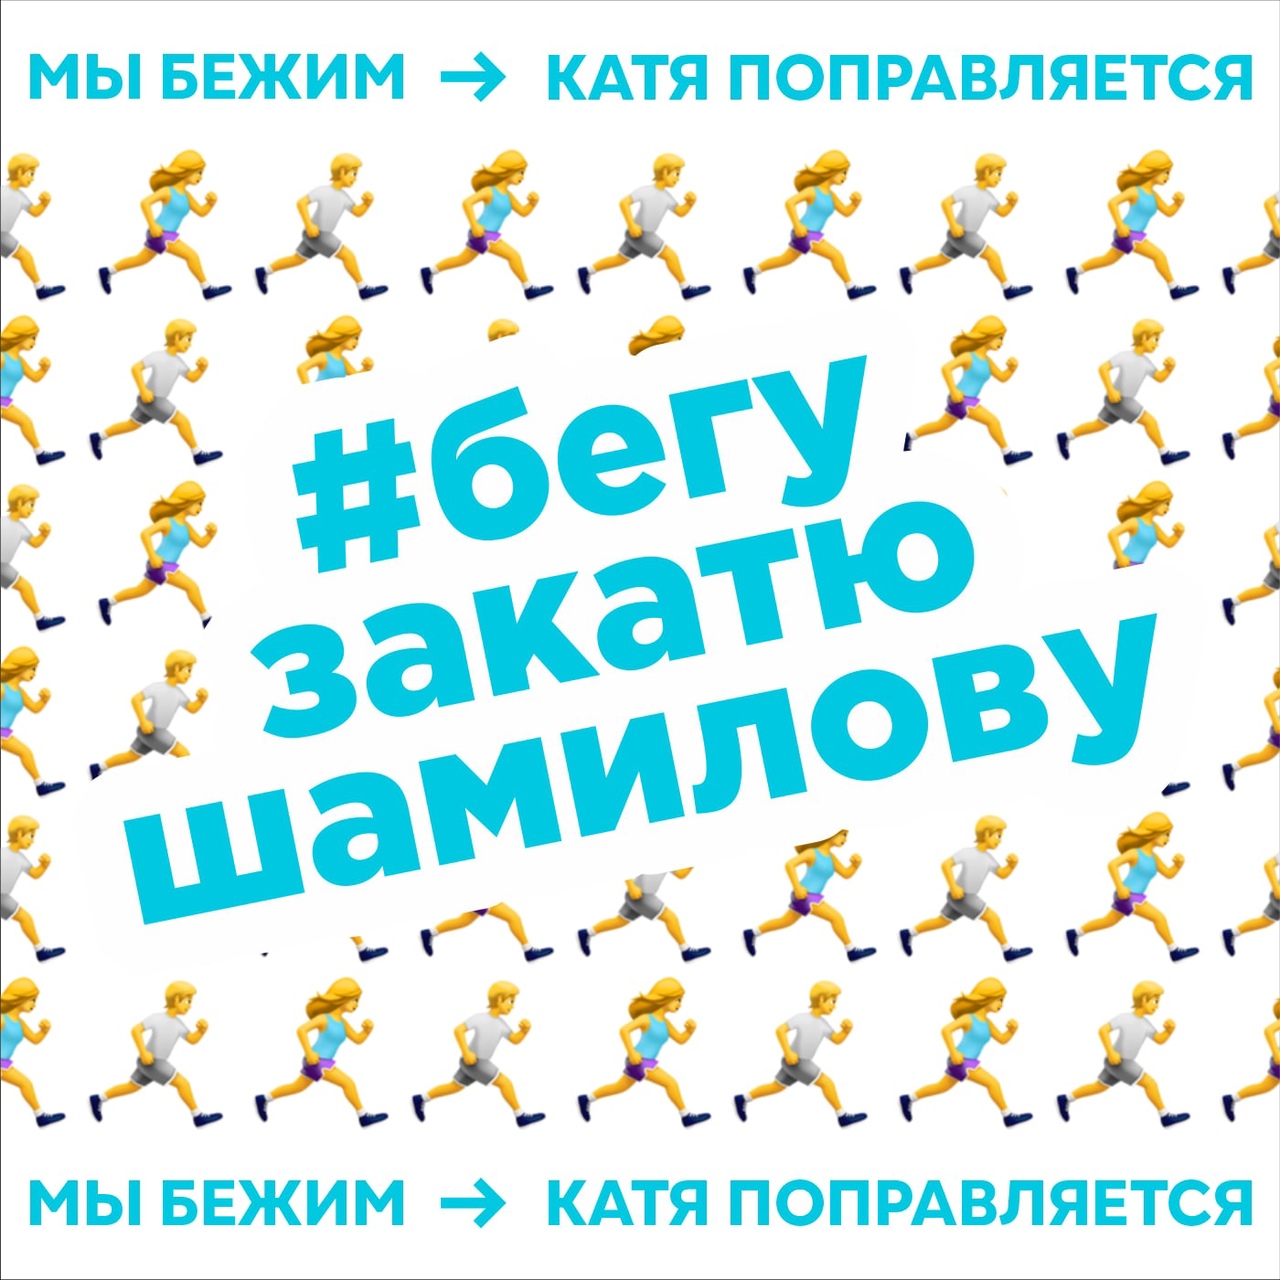 Бегу за Катю Шамилову! Оренбургские спортсмены запустили благотворительный онлайн-забег